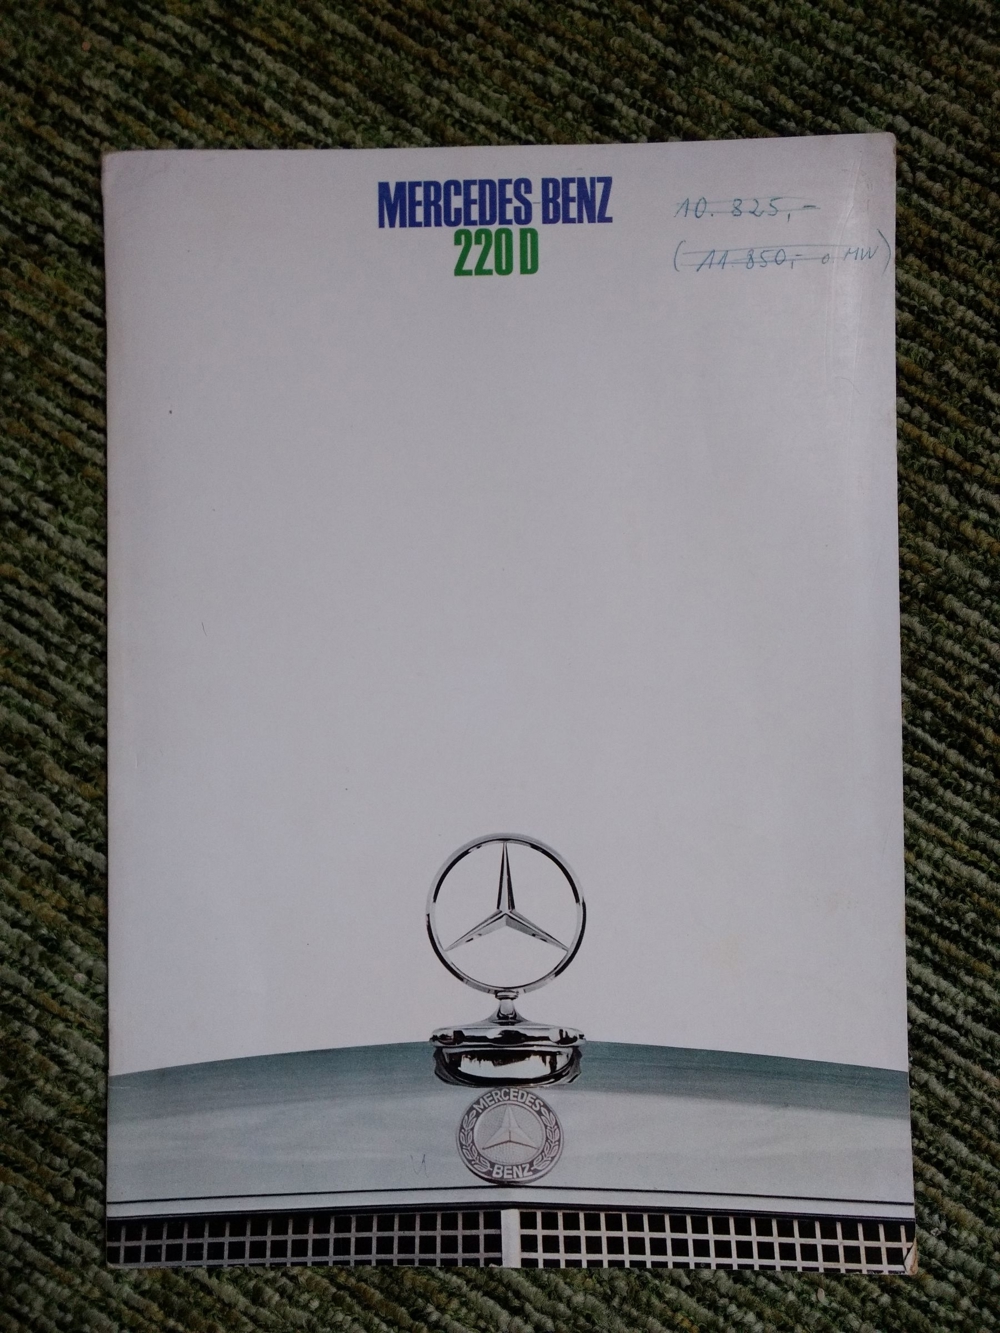 Mercedes Benz Prospekt, 220D, Anfang 1970er Jahre